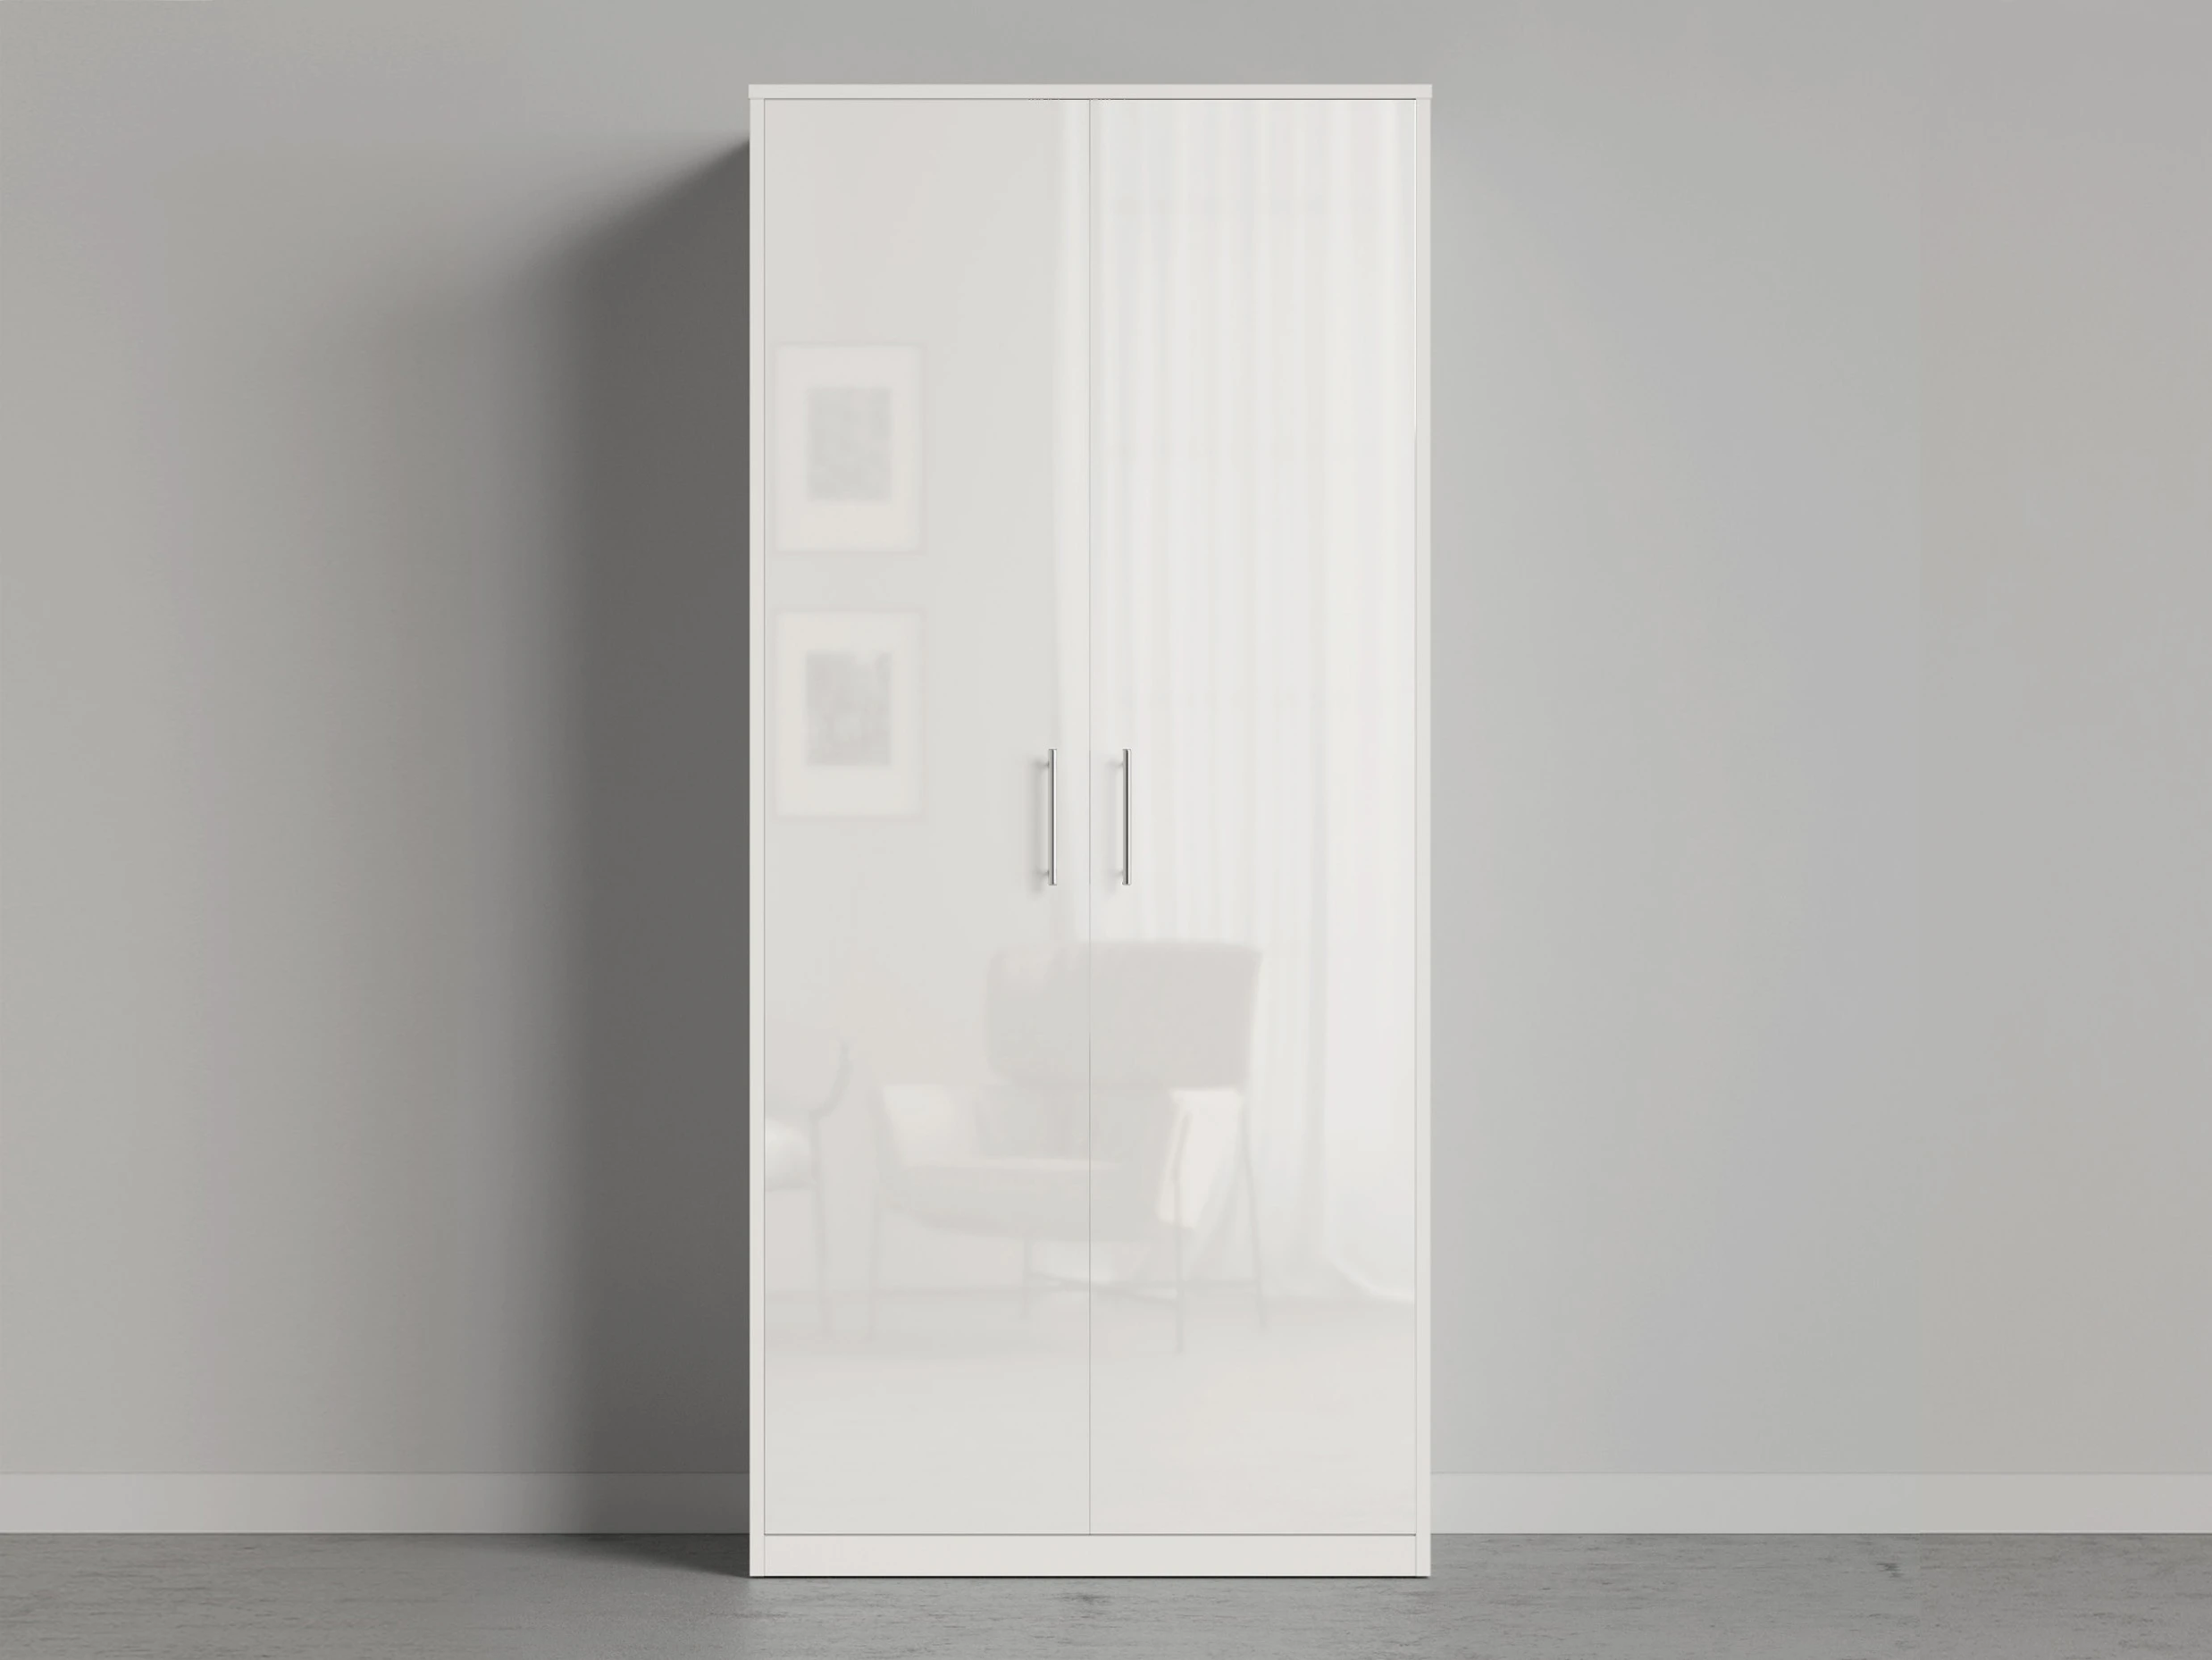 1 Closet 100x200 cm (Standard 45 cm depth) White / White Gloss